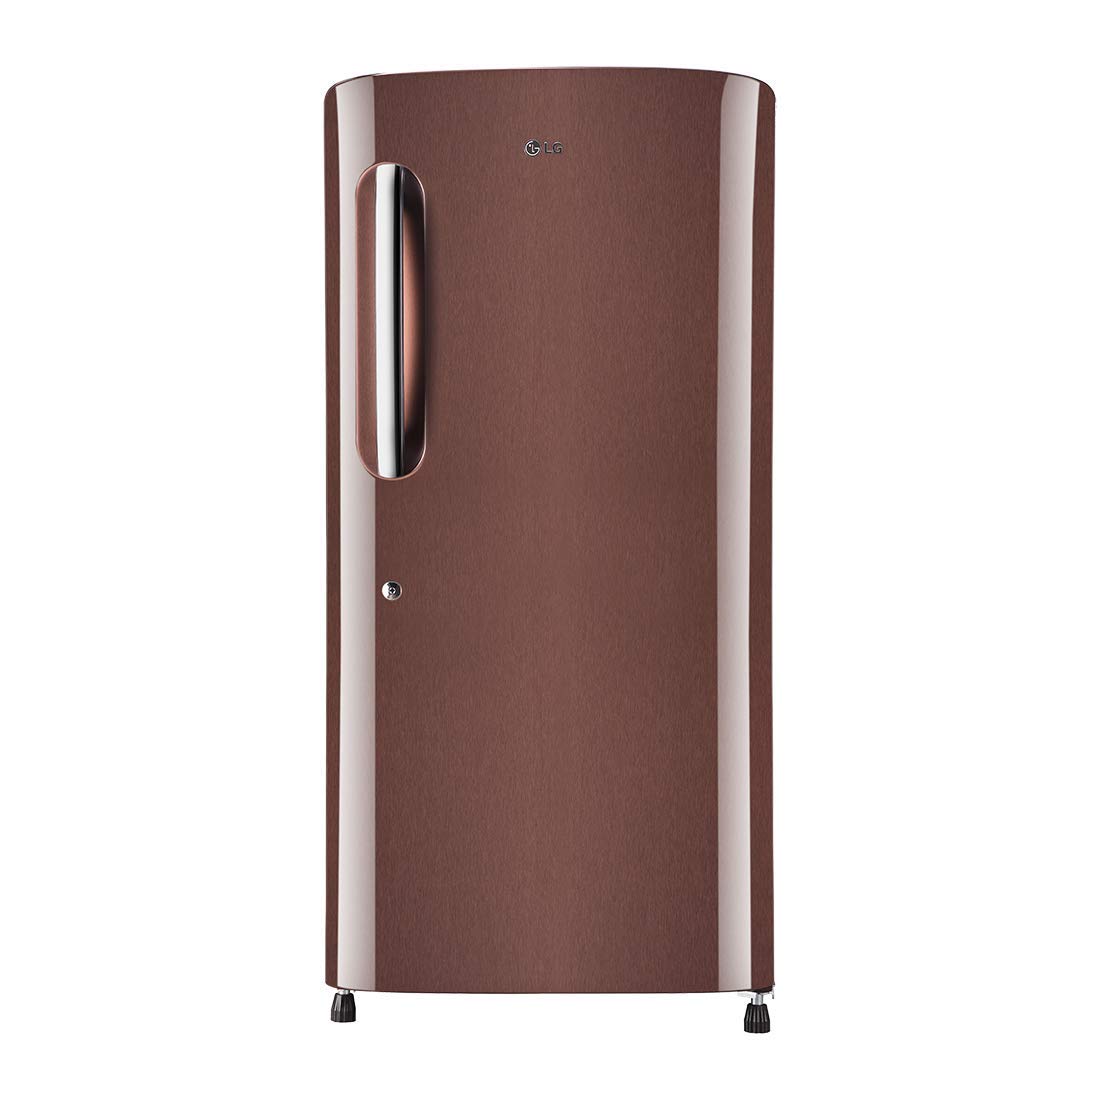 LG 185 L 3 Star Direct-Cool Single Door Refrigerator (GL-B201ASPD